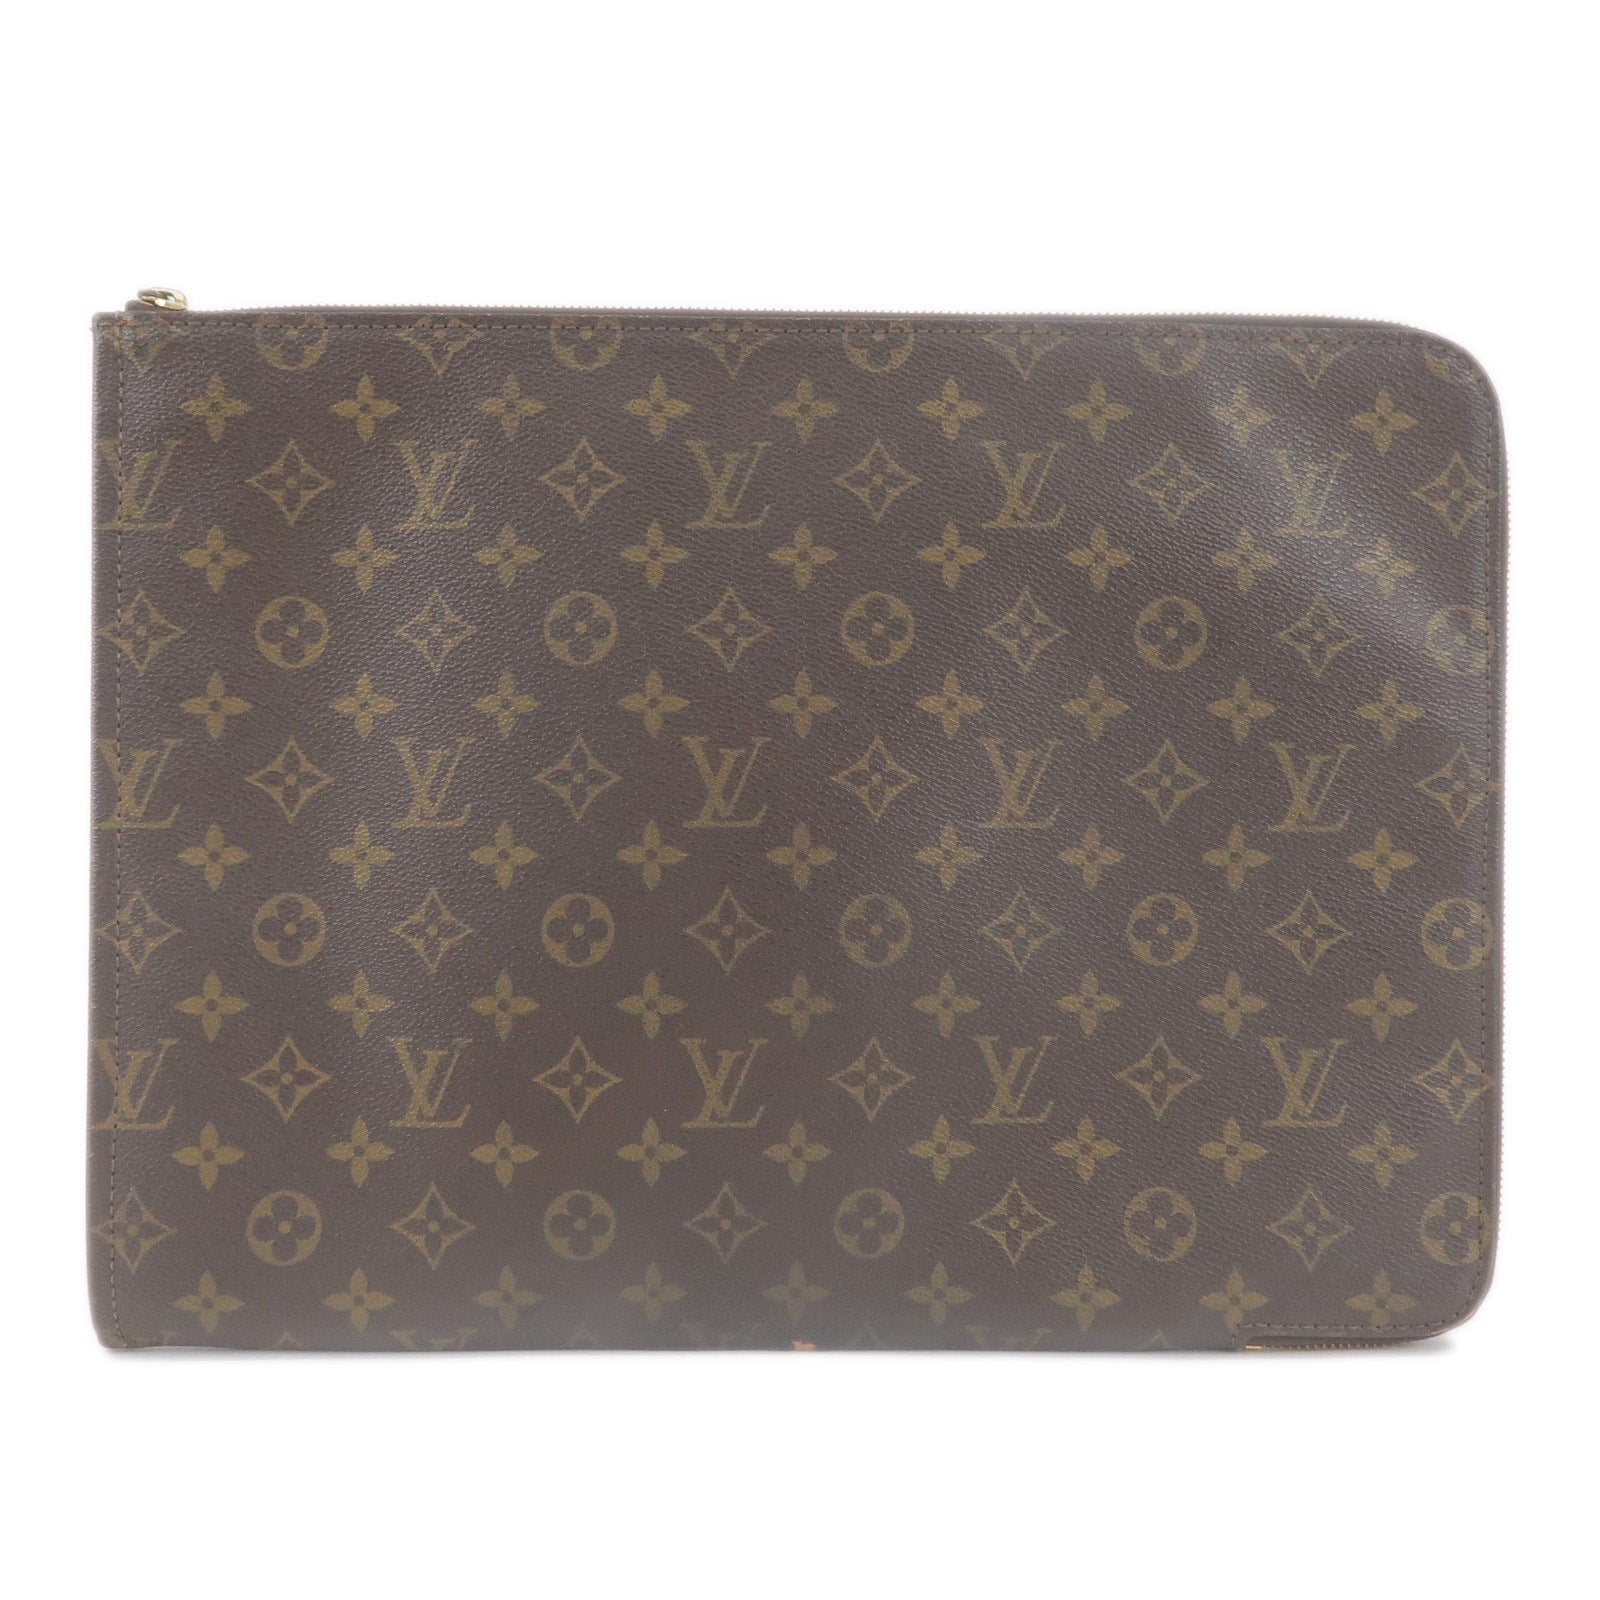 Louis-Vuitton-Monogram-Porte-Documents-Clutch-Bag-M53456